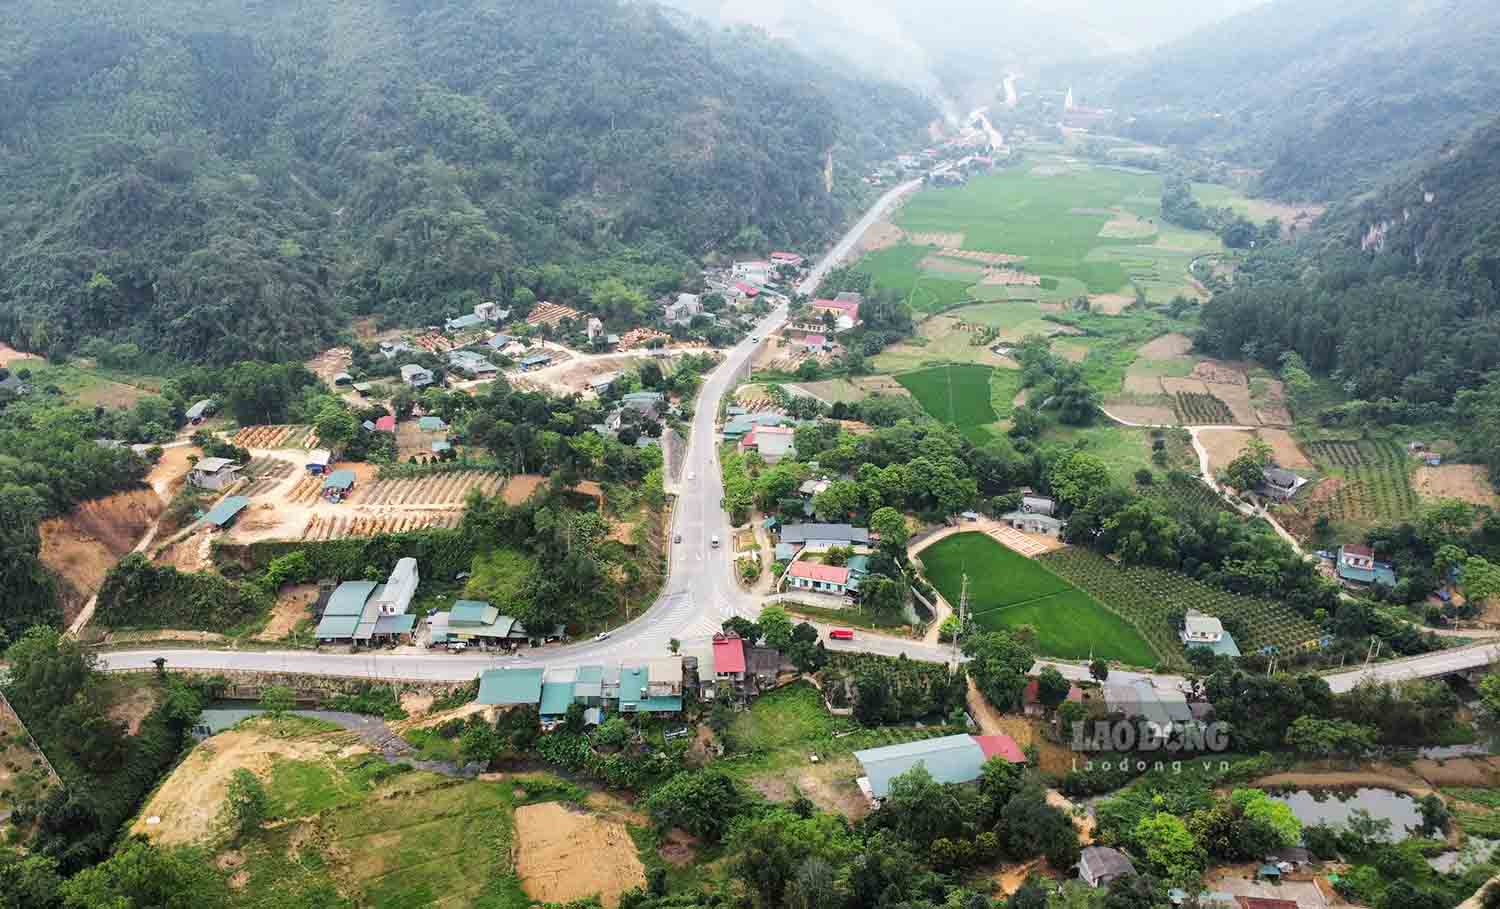 Đường Hồ Chí Minh qua tỉnh Tuyên Quang dài khoảng 59km từ Đèo Muồng đến giáp danh huyện Đoan Hùng, tỉnh Phú Thọ, trong đó đi trùng QL2C và QL2 là 29km. Hơn 13km đoạn từ Ngã ba Phú Thịnh đến giao giao cắt với QL2 đã đưa vào sử dụng hơn 7 năm qua.